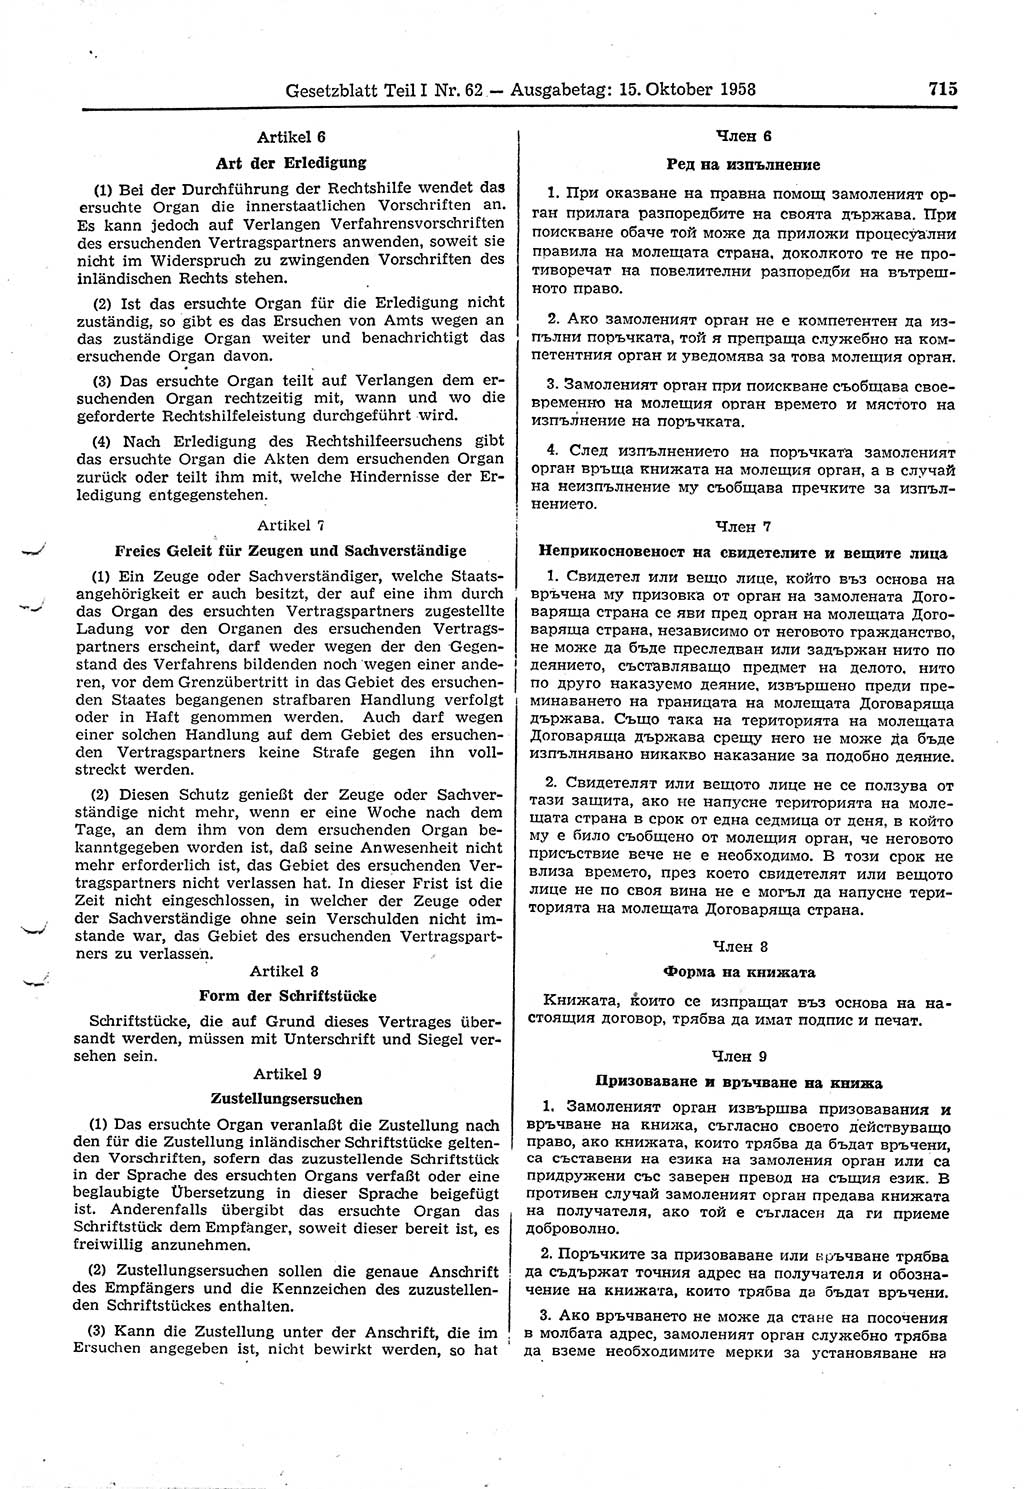 Gesetzblatt (GBl.) der Deutschen Demokratischen Republik (DDR) Teil Ⅰ 1958, Seite 715 (GBl. DDR Ⅰ 1958, S. 715)